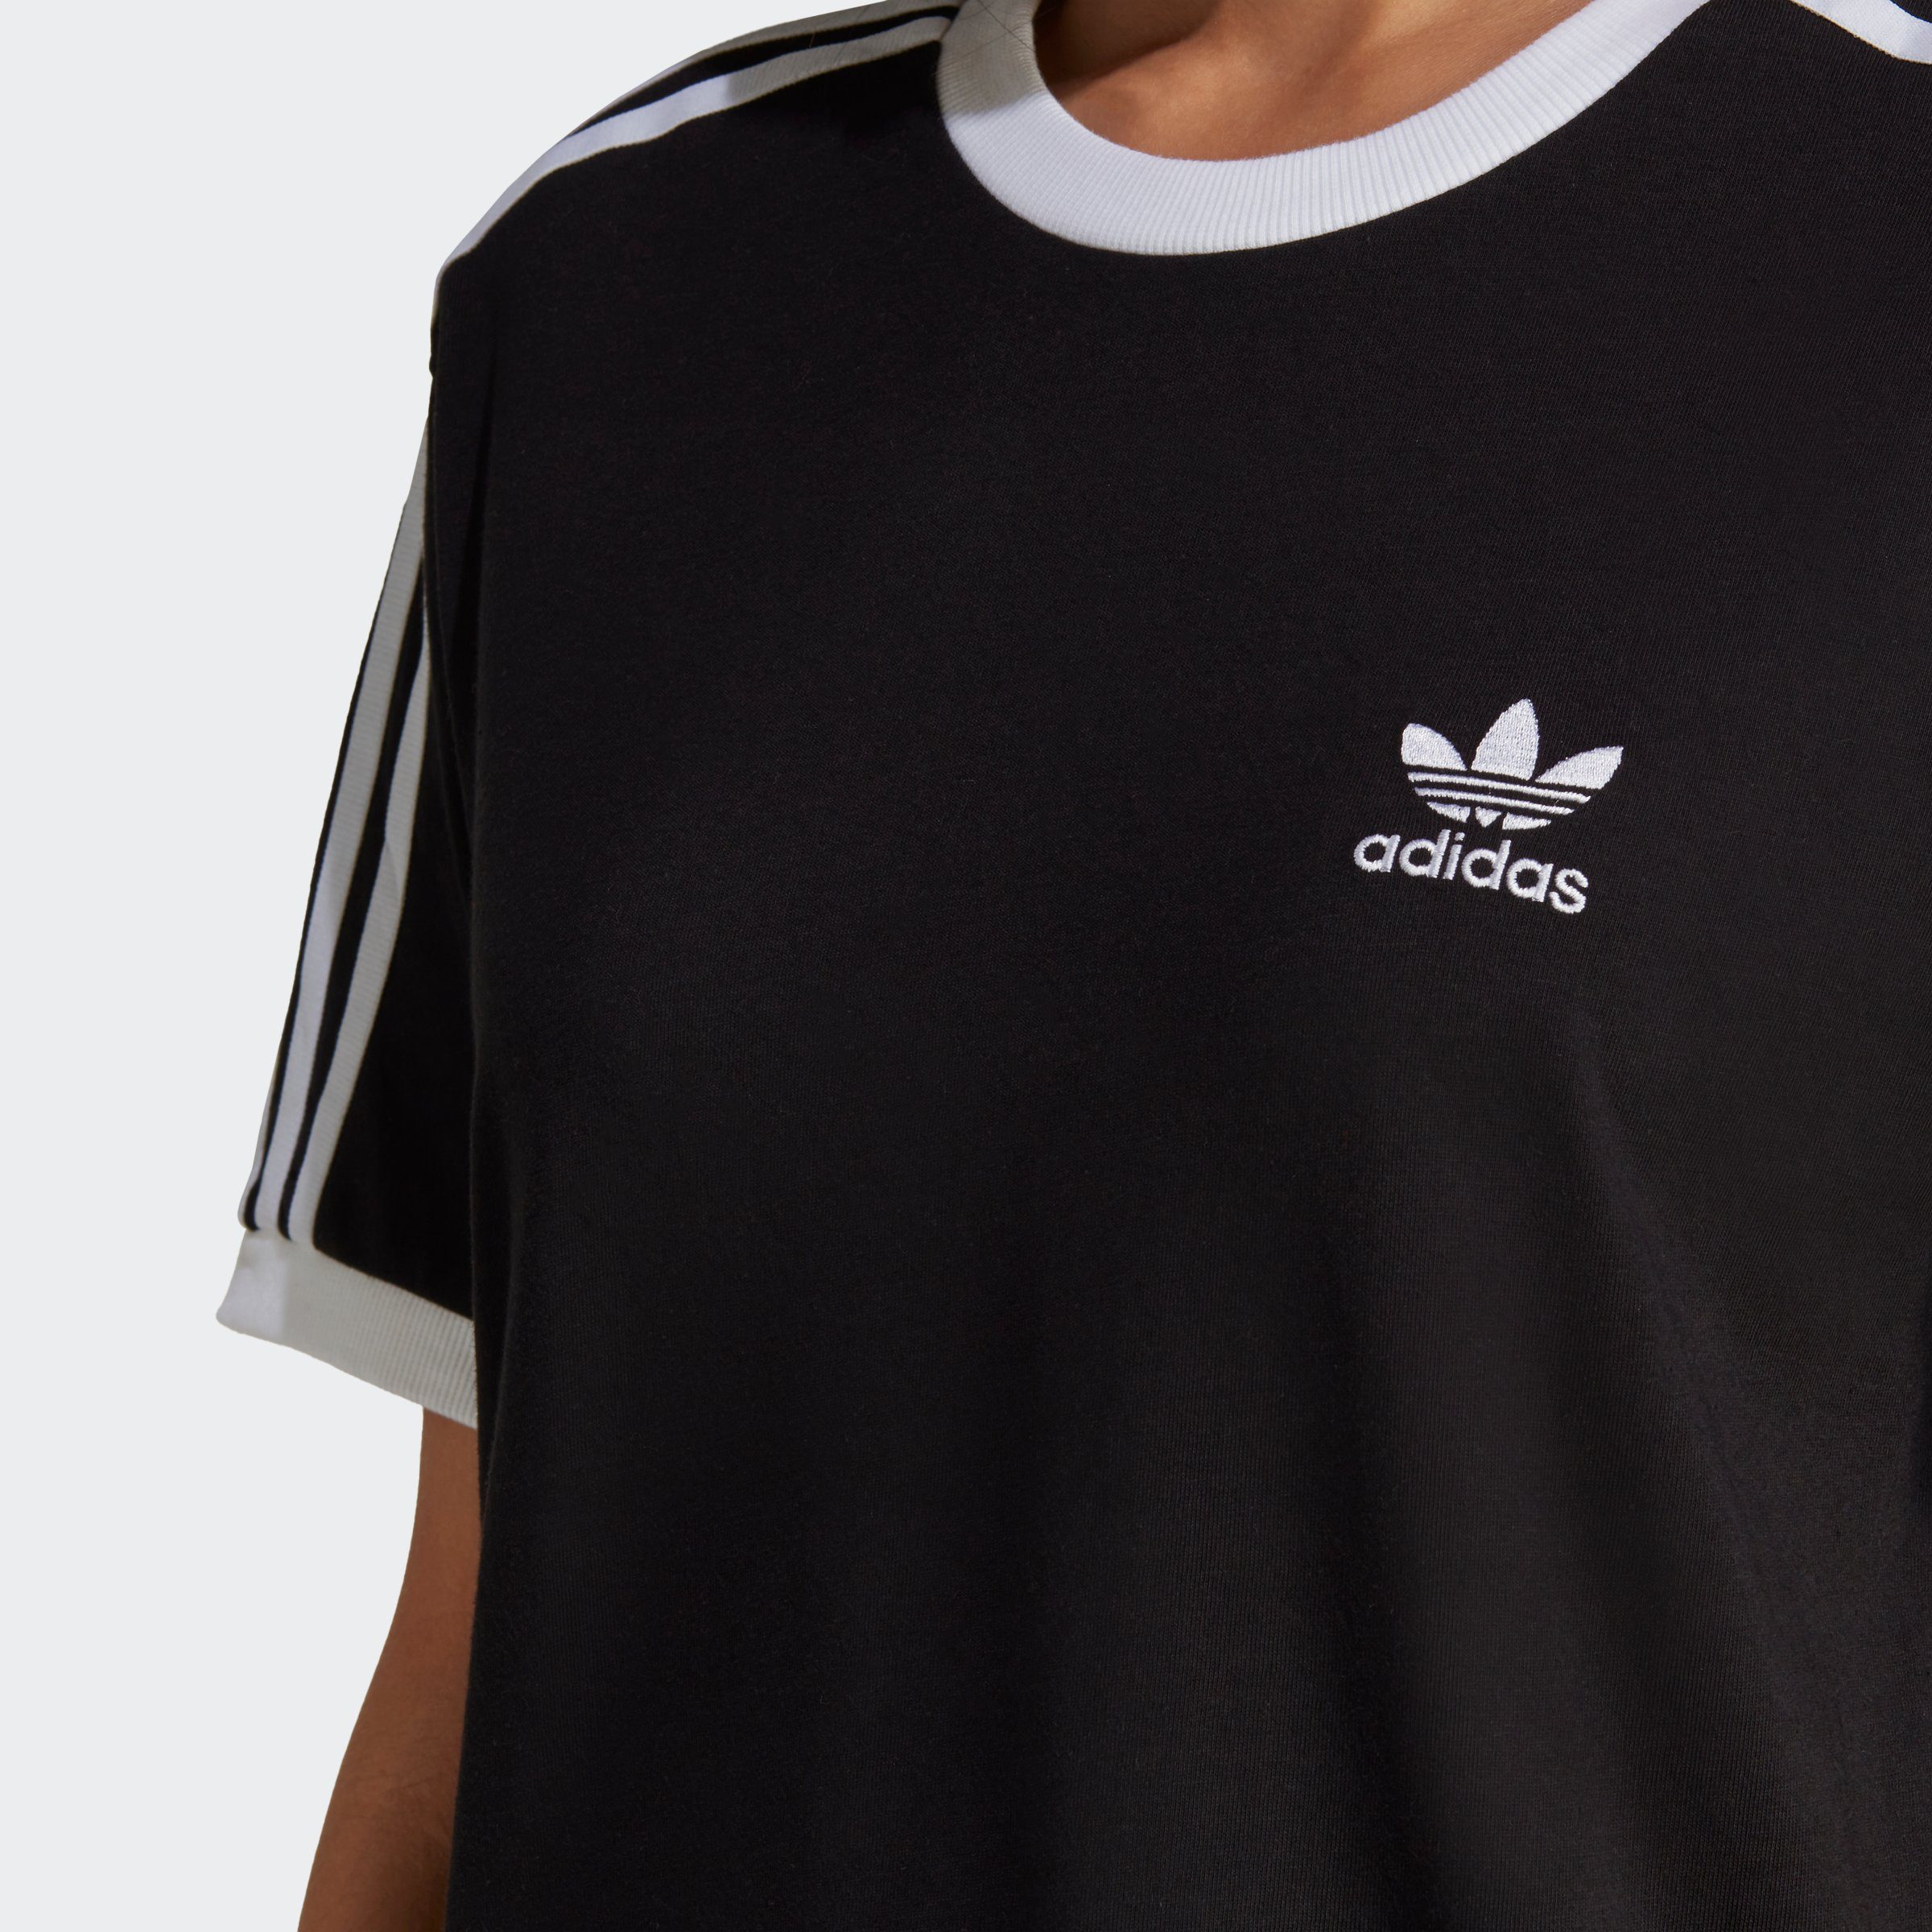 adidas Originals Black T-Shirt 3-STREIFEN ADICOLOR CLASSICS